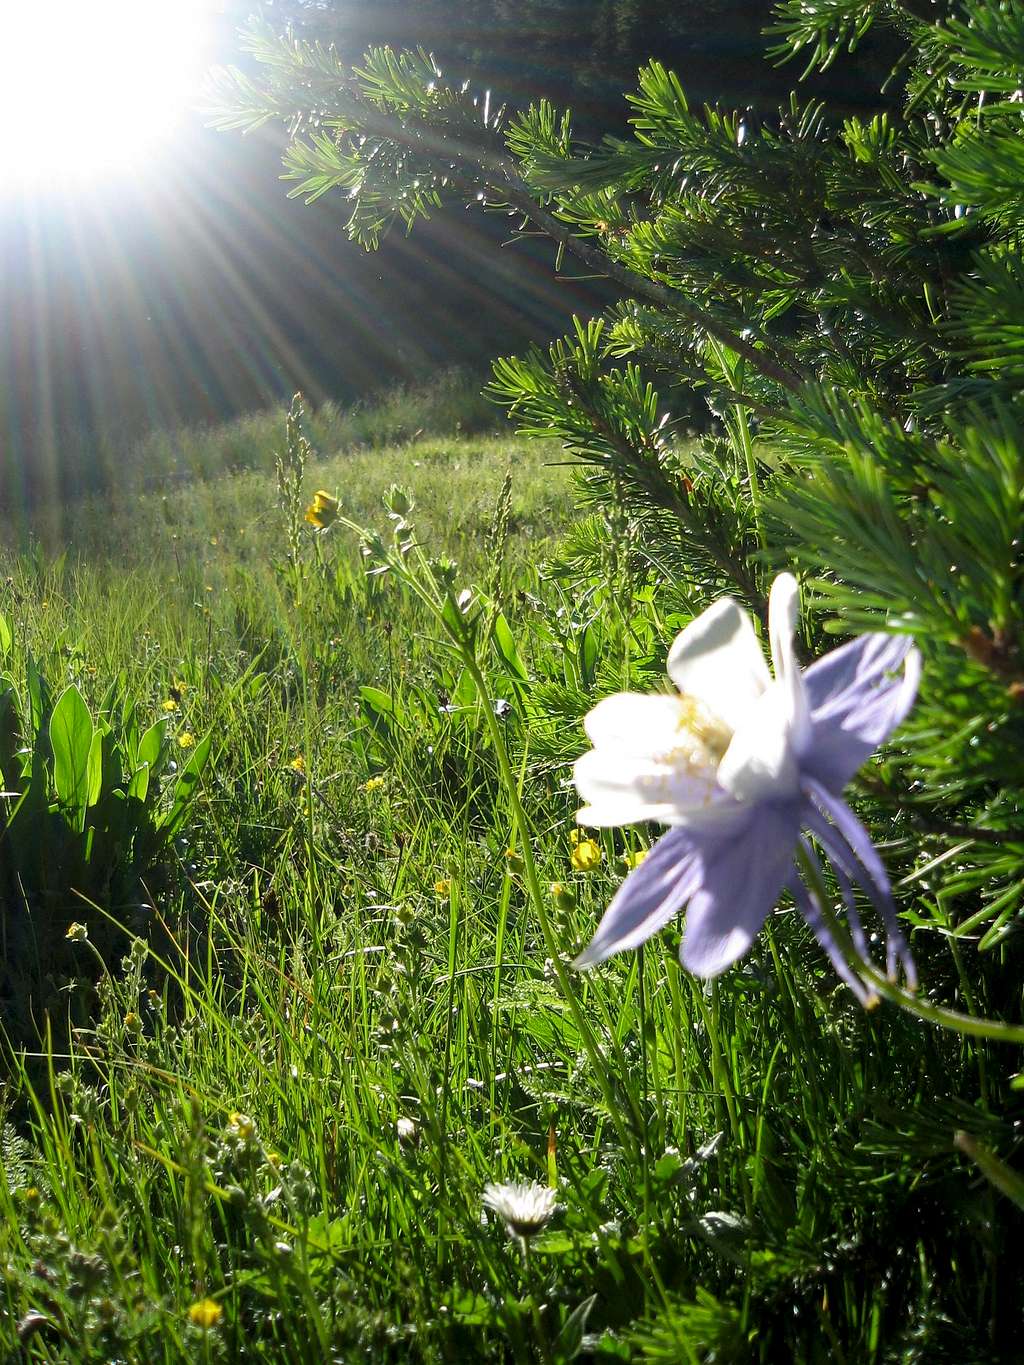 Morning flower en route to Sunlight